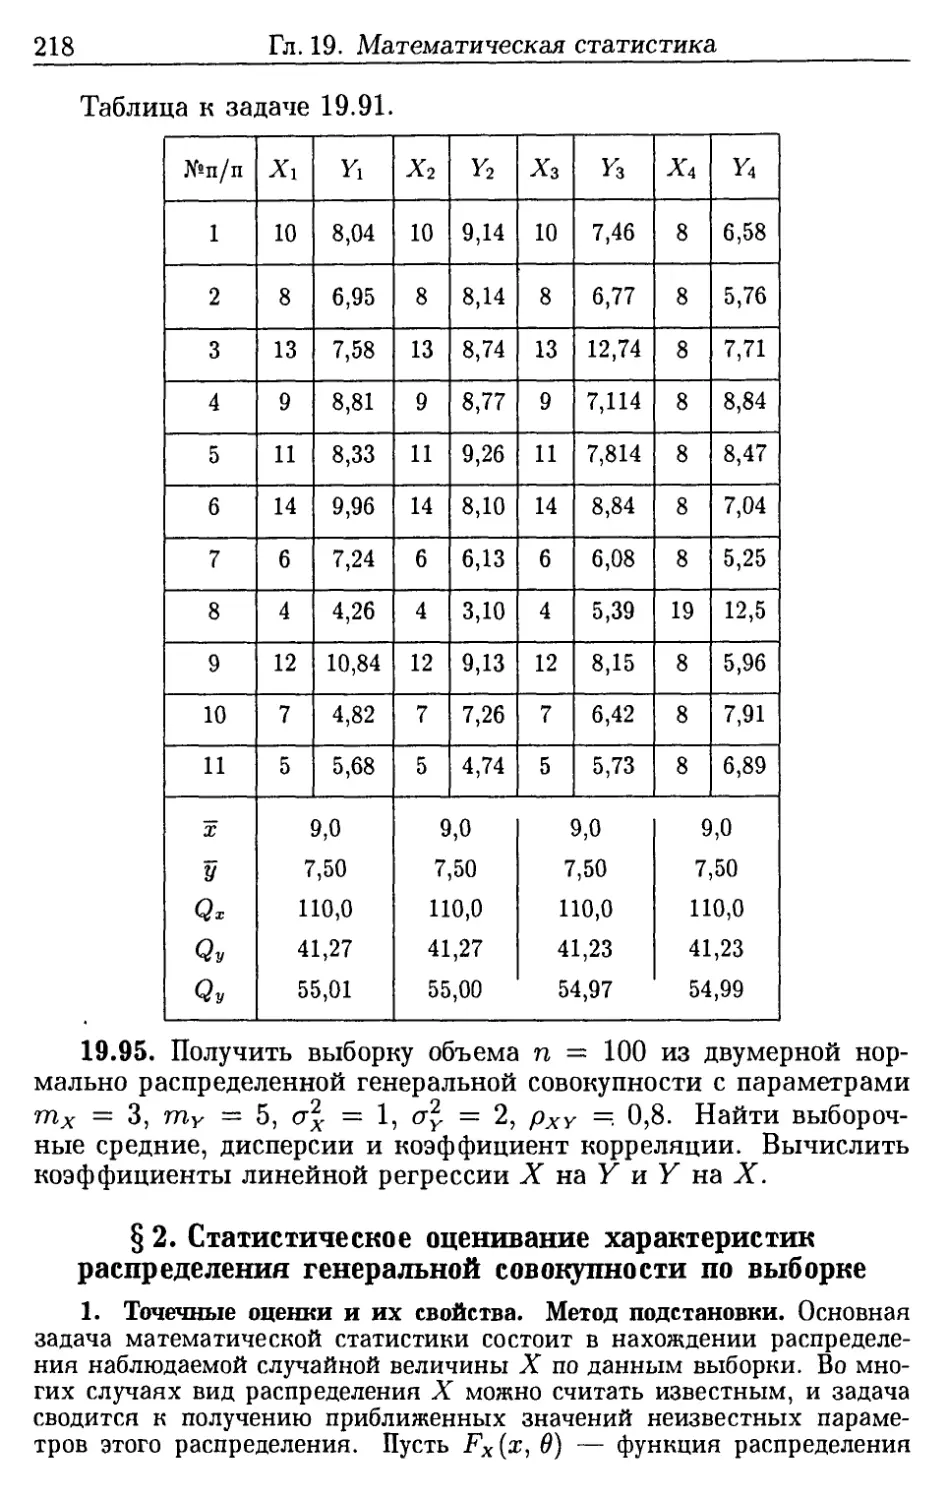 §2. Статистическое оценивание характеристик распределения генеральной совокупности по выборке